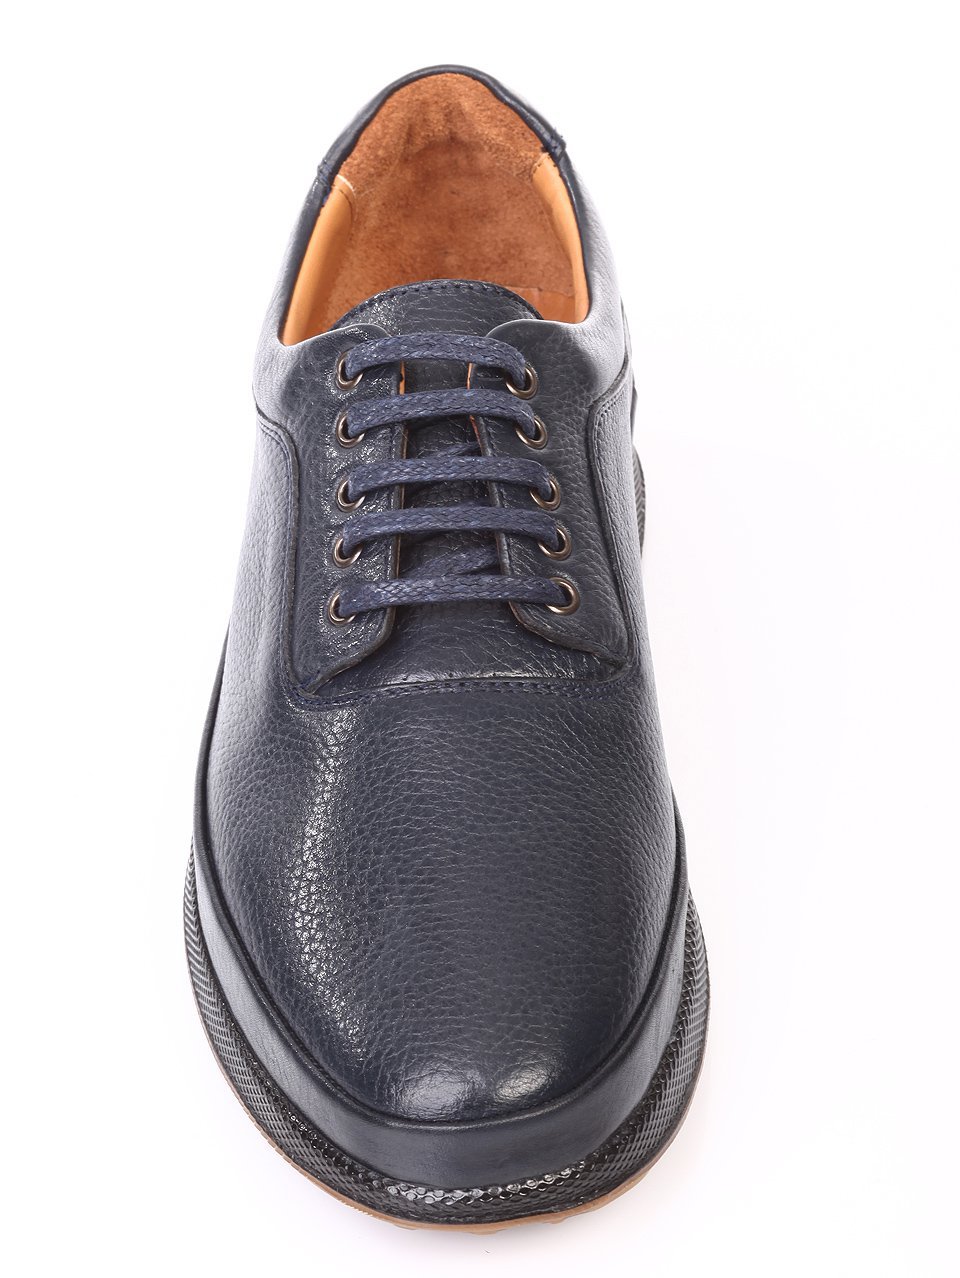 Ежедневни мъжки обувки от естествена кожа  в синьо 7AT-171175 dk.blue